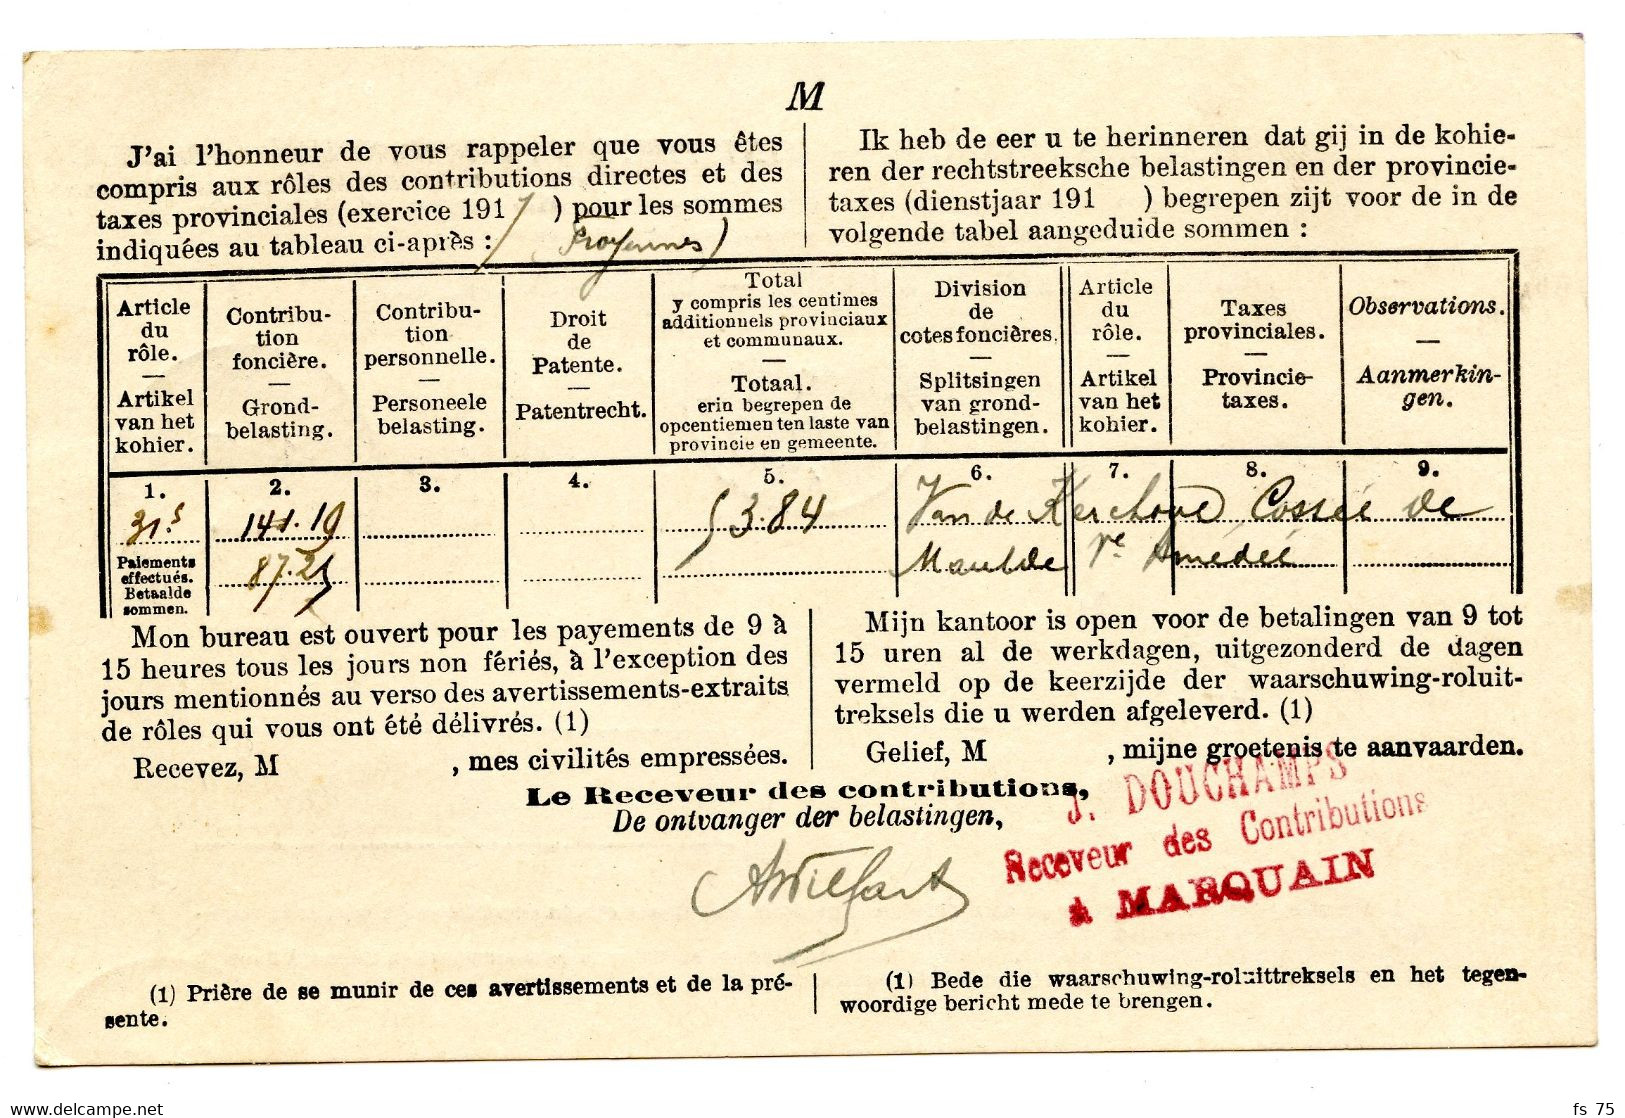 BELGIQUE - SIMPLE CERCLE RELAIS A ETOILES MARQUAIN SUR LETTRE DE SERVICE, 1919 - Sternenstempel